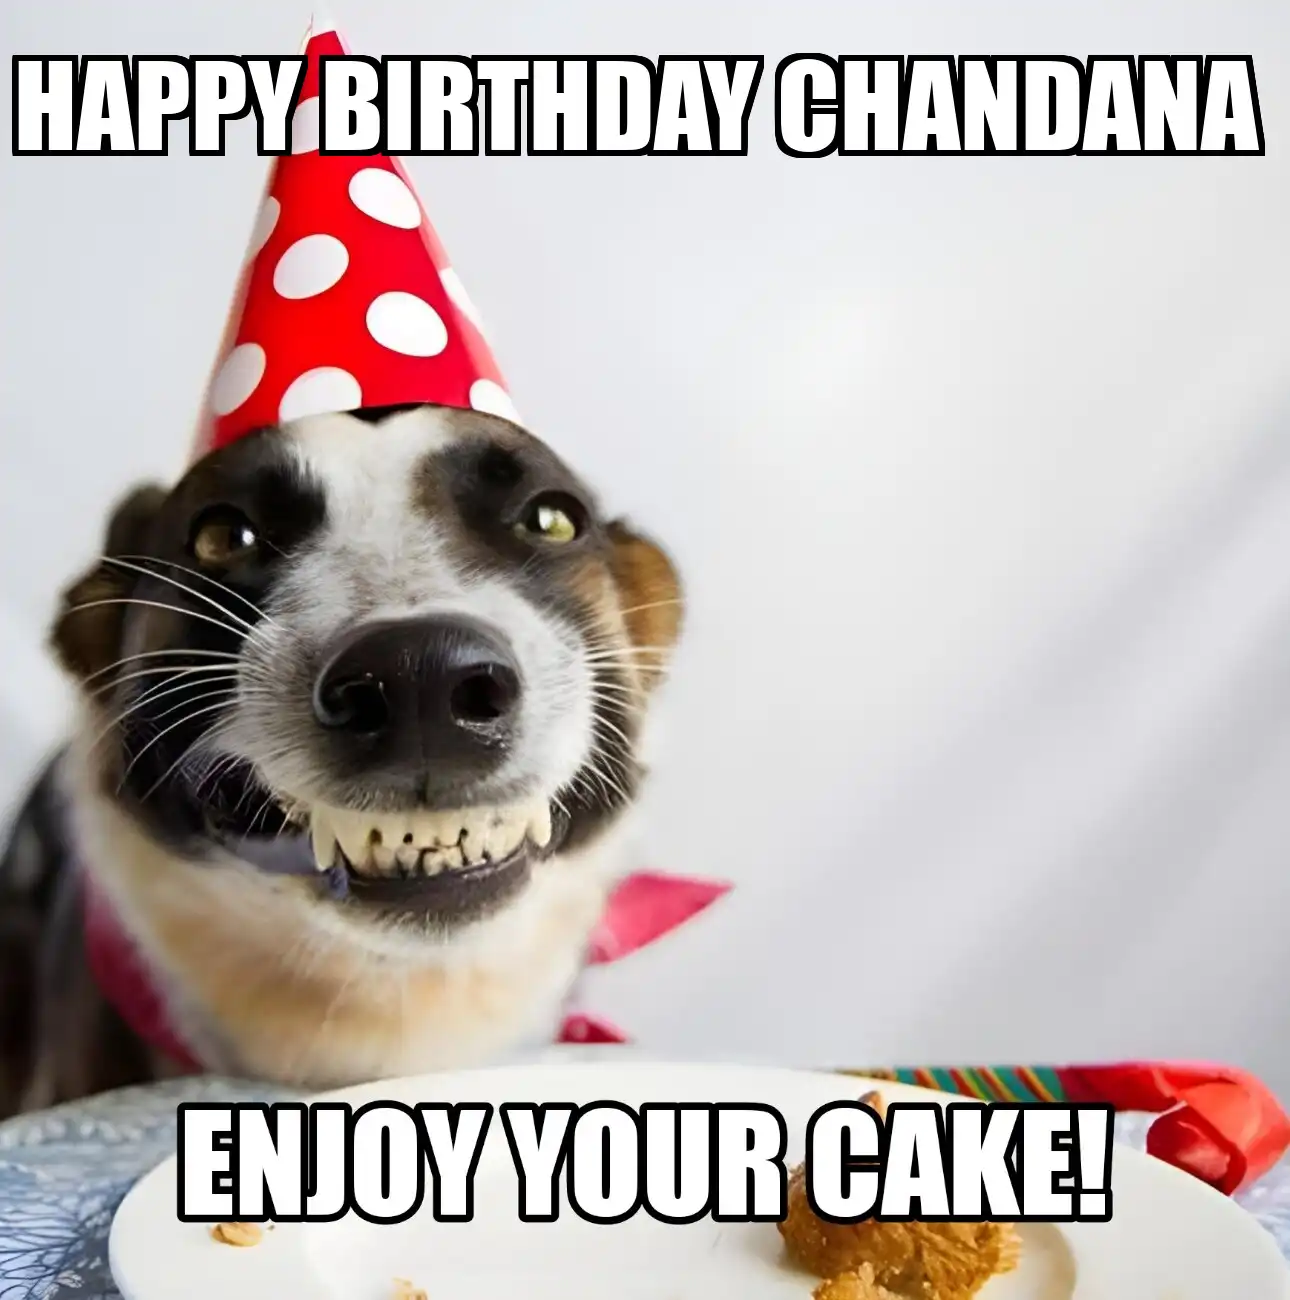 Happy Birthday Chandana Enjoy Your Cake Dog Meme